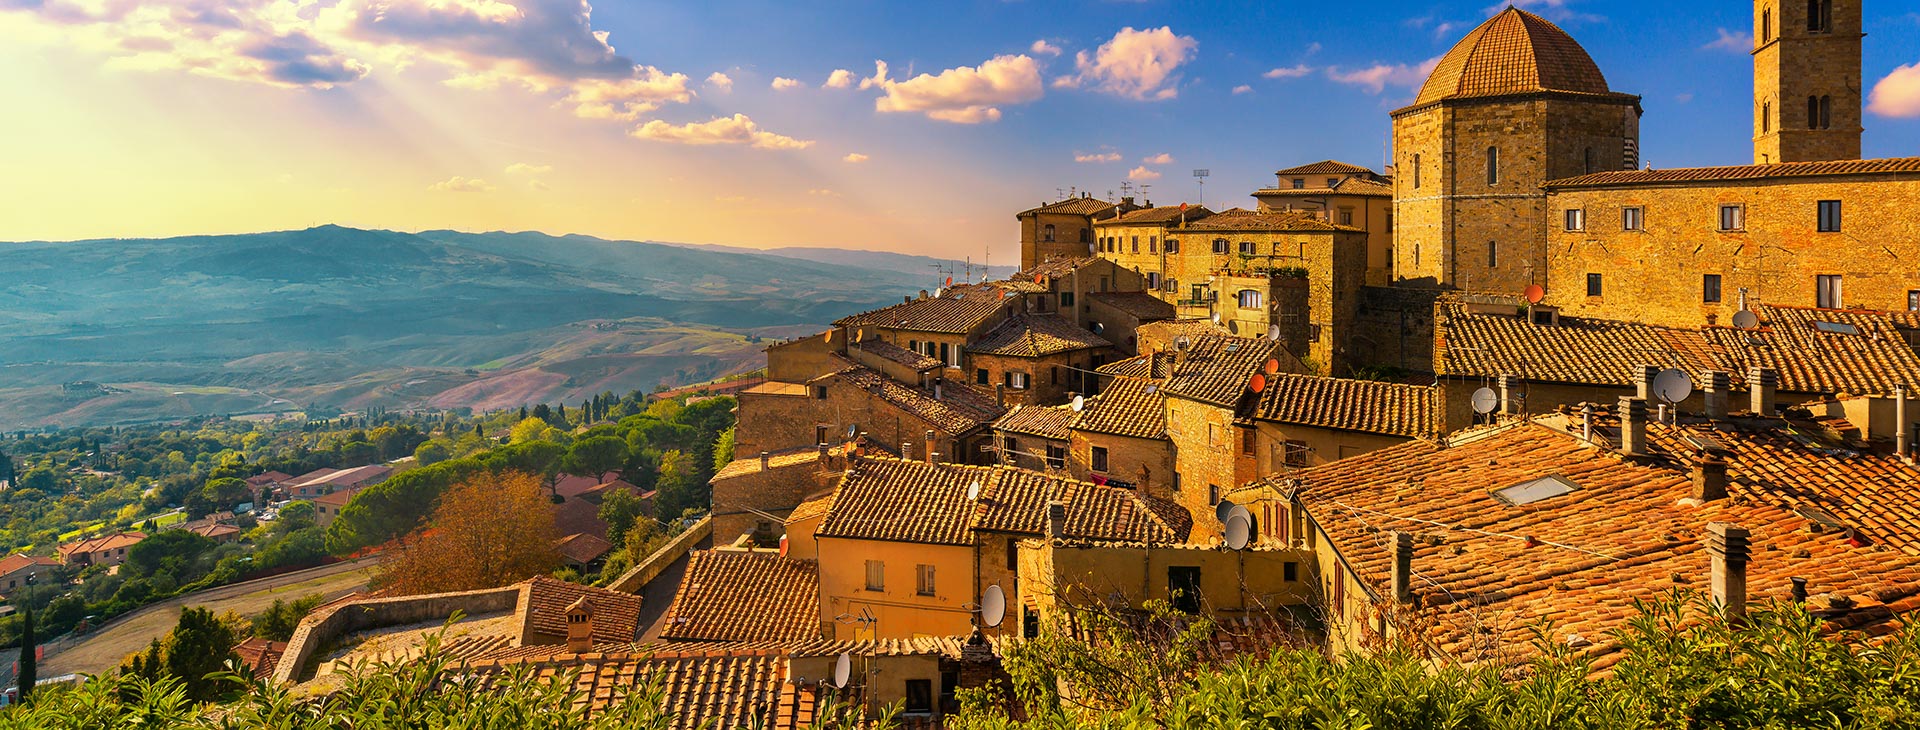 Zielone Wzgórza Toskani – Geotour oferuje wycieczkę objazdową